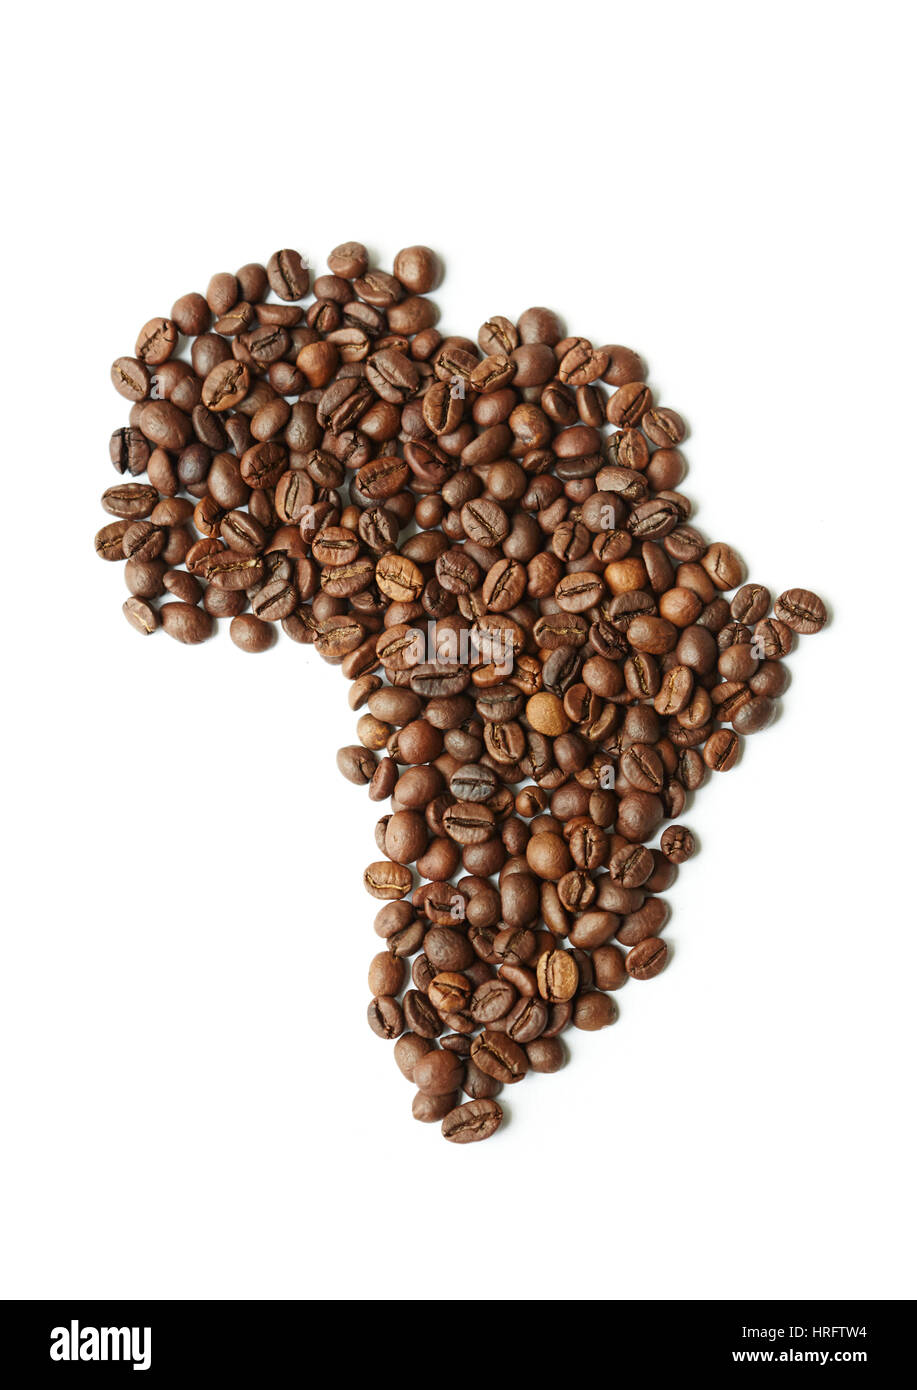 Closeup über Ansicht gedreht: Heap reichen braun frisch gerösteten Kaffee Samen auf weißen Tisch in Form des afrikanischen Kontinents verstreut Stockfoto